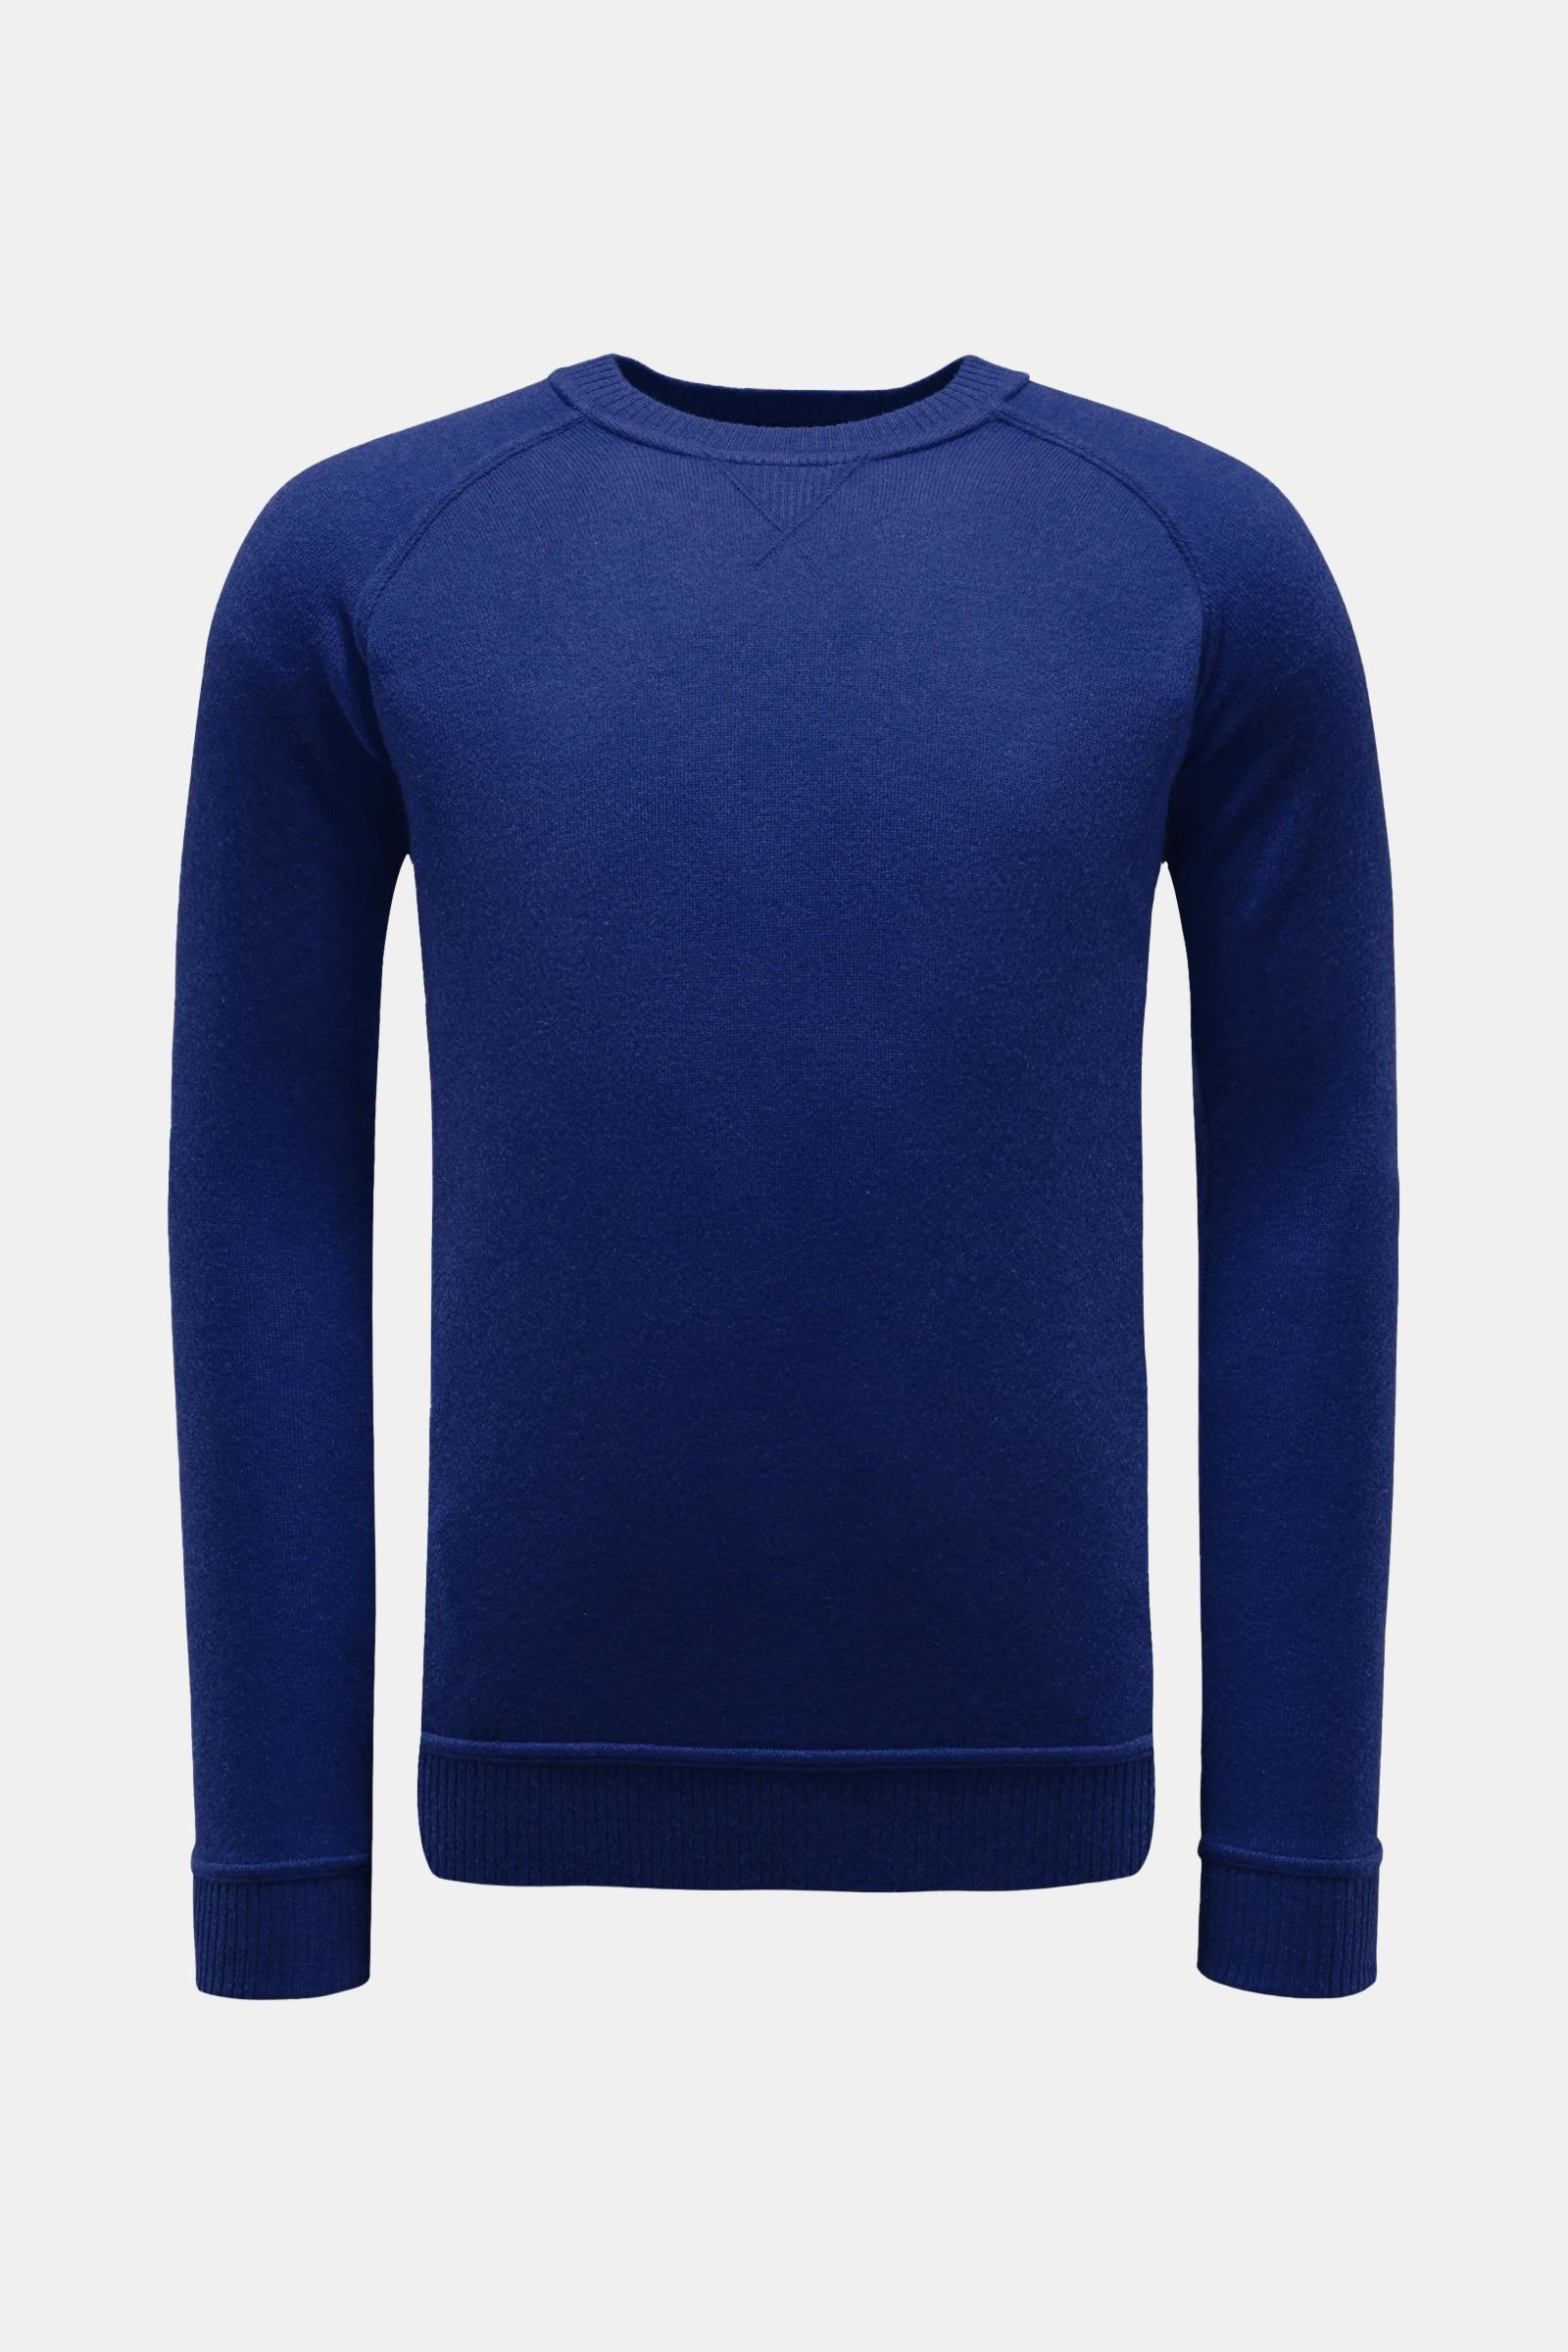 Cashmere R-Neck Pullover blau